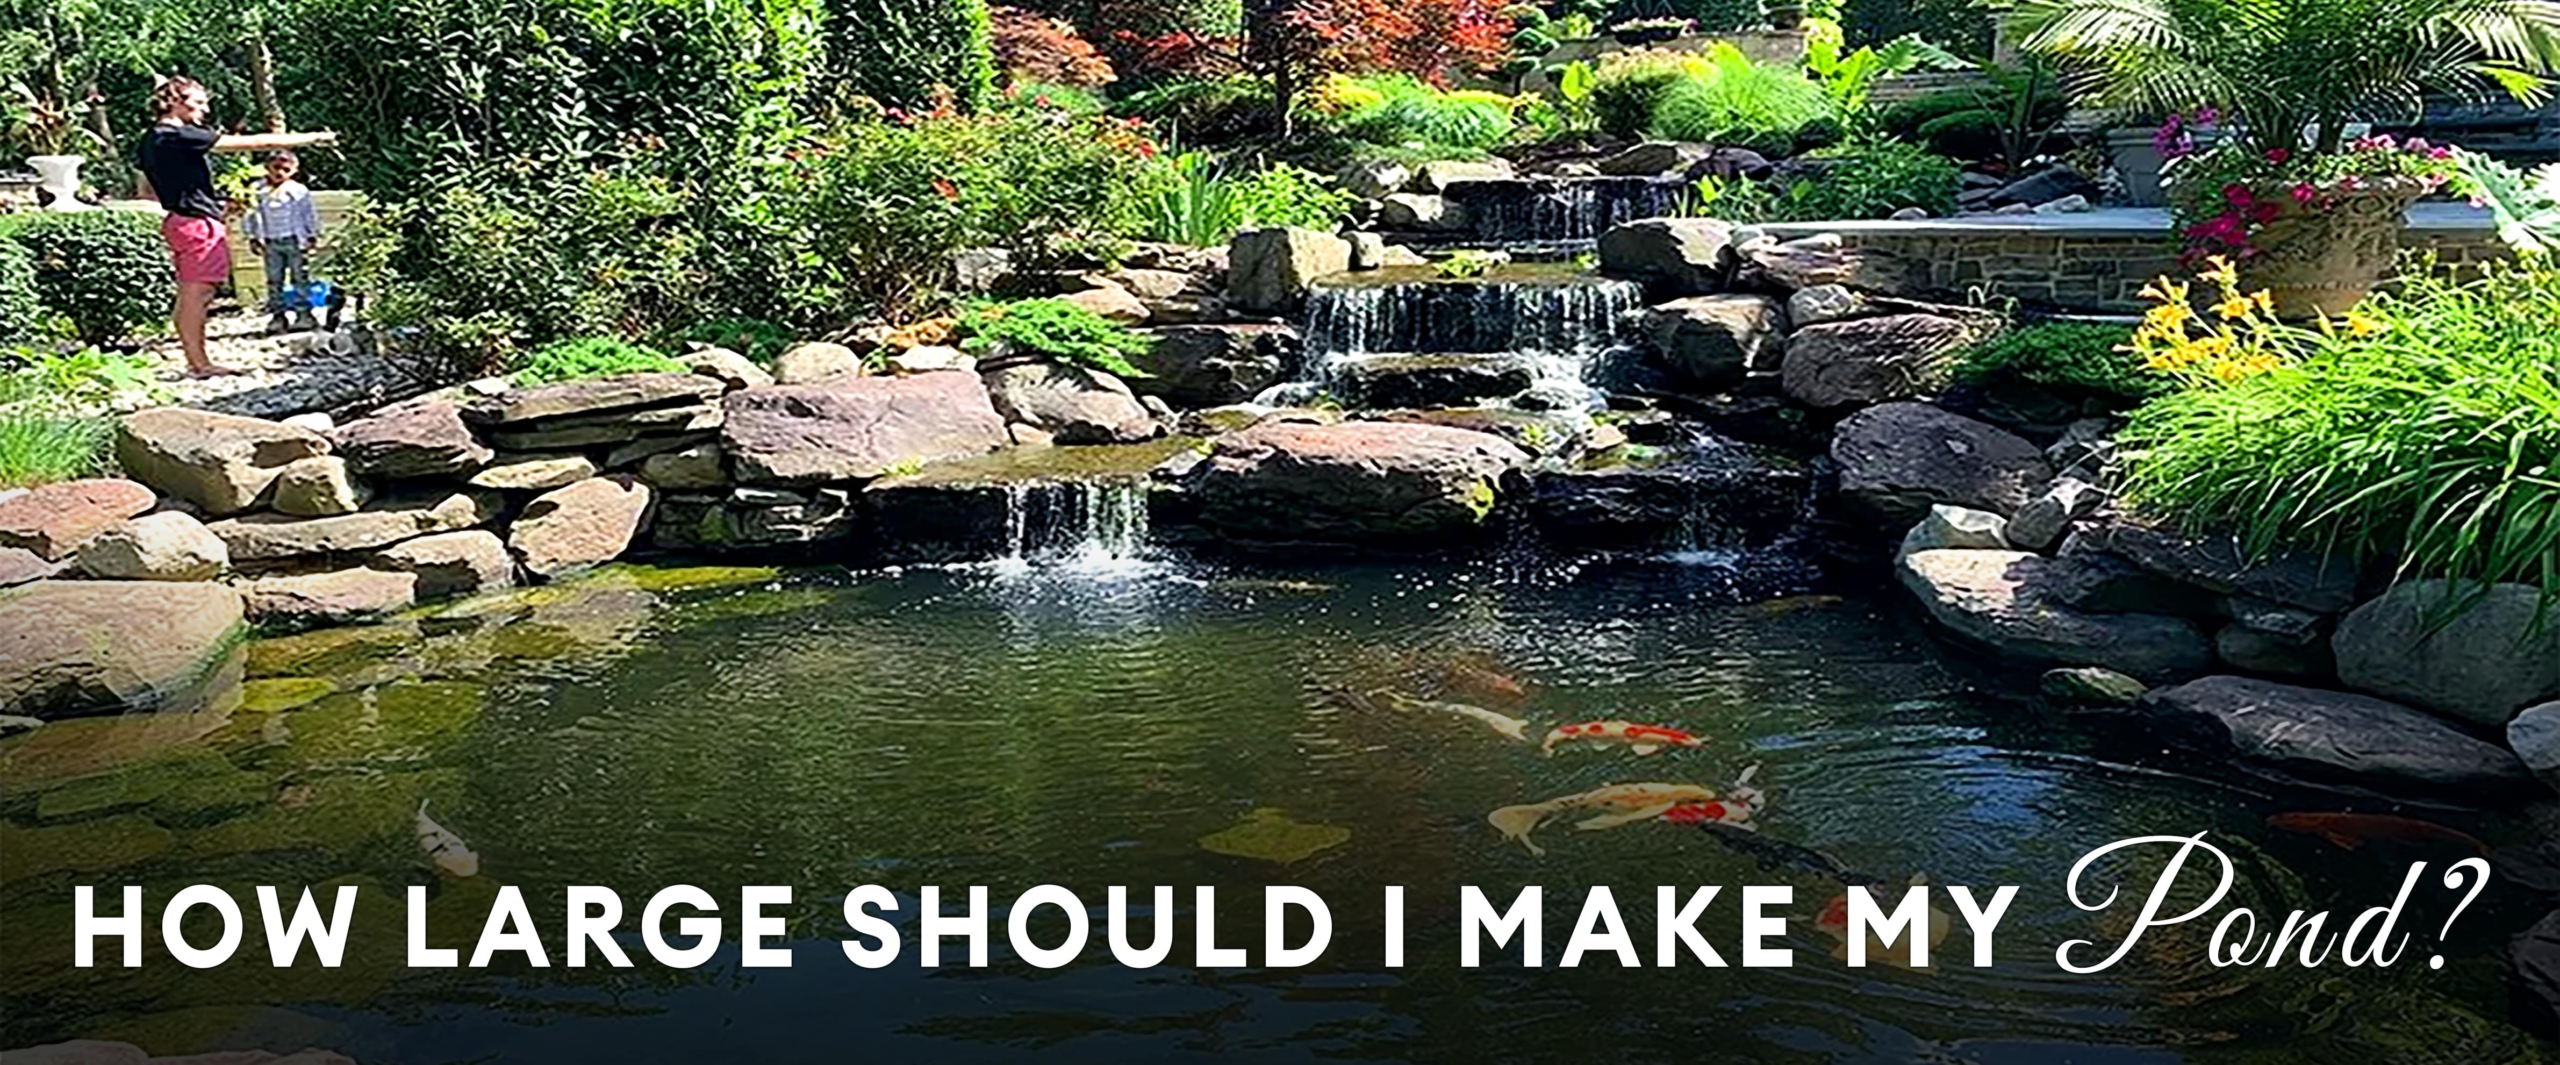 How-large-should-I-make-my-pond